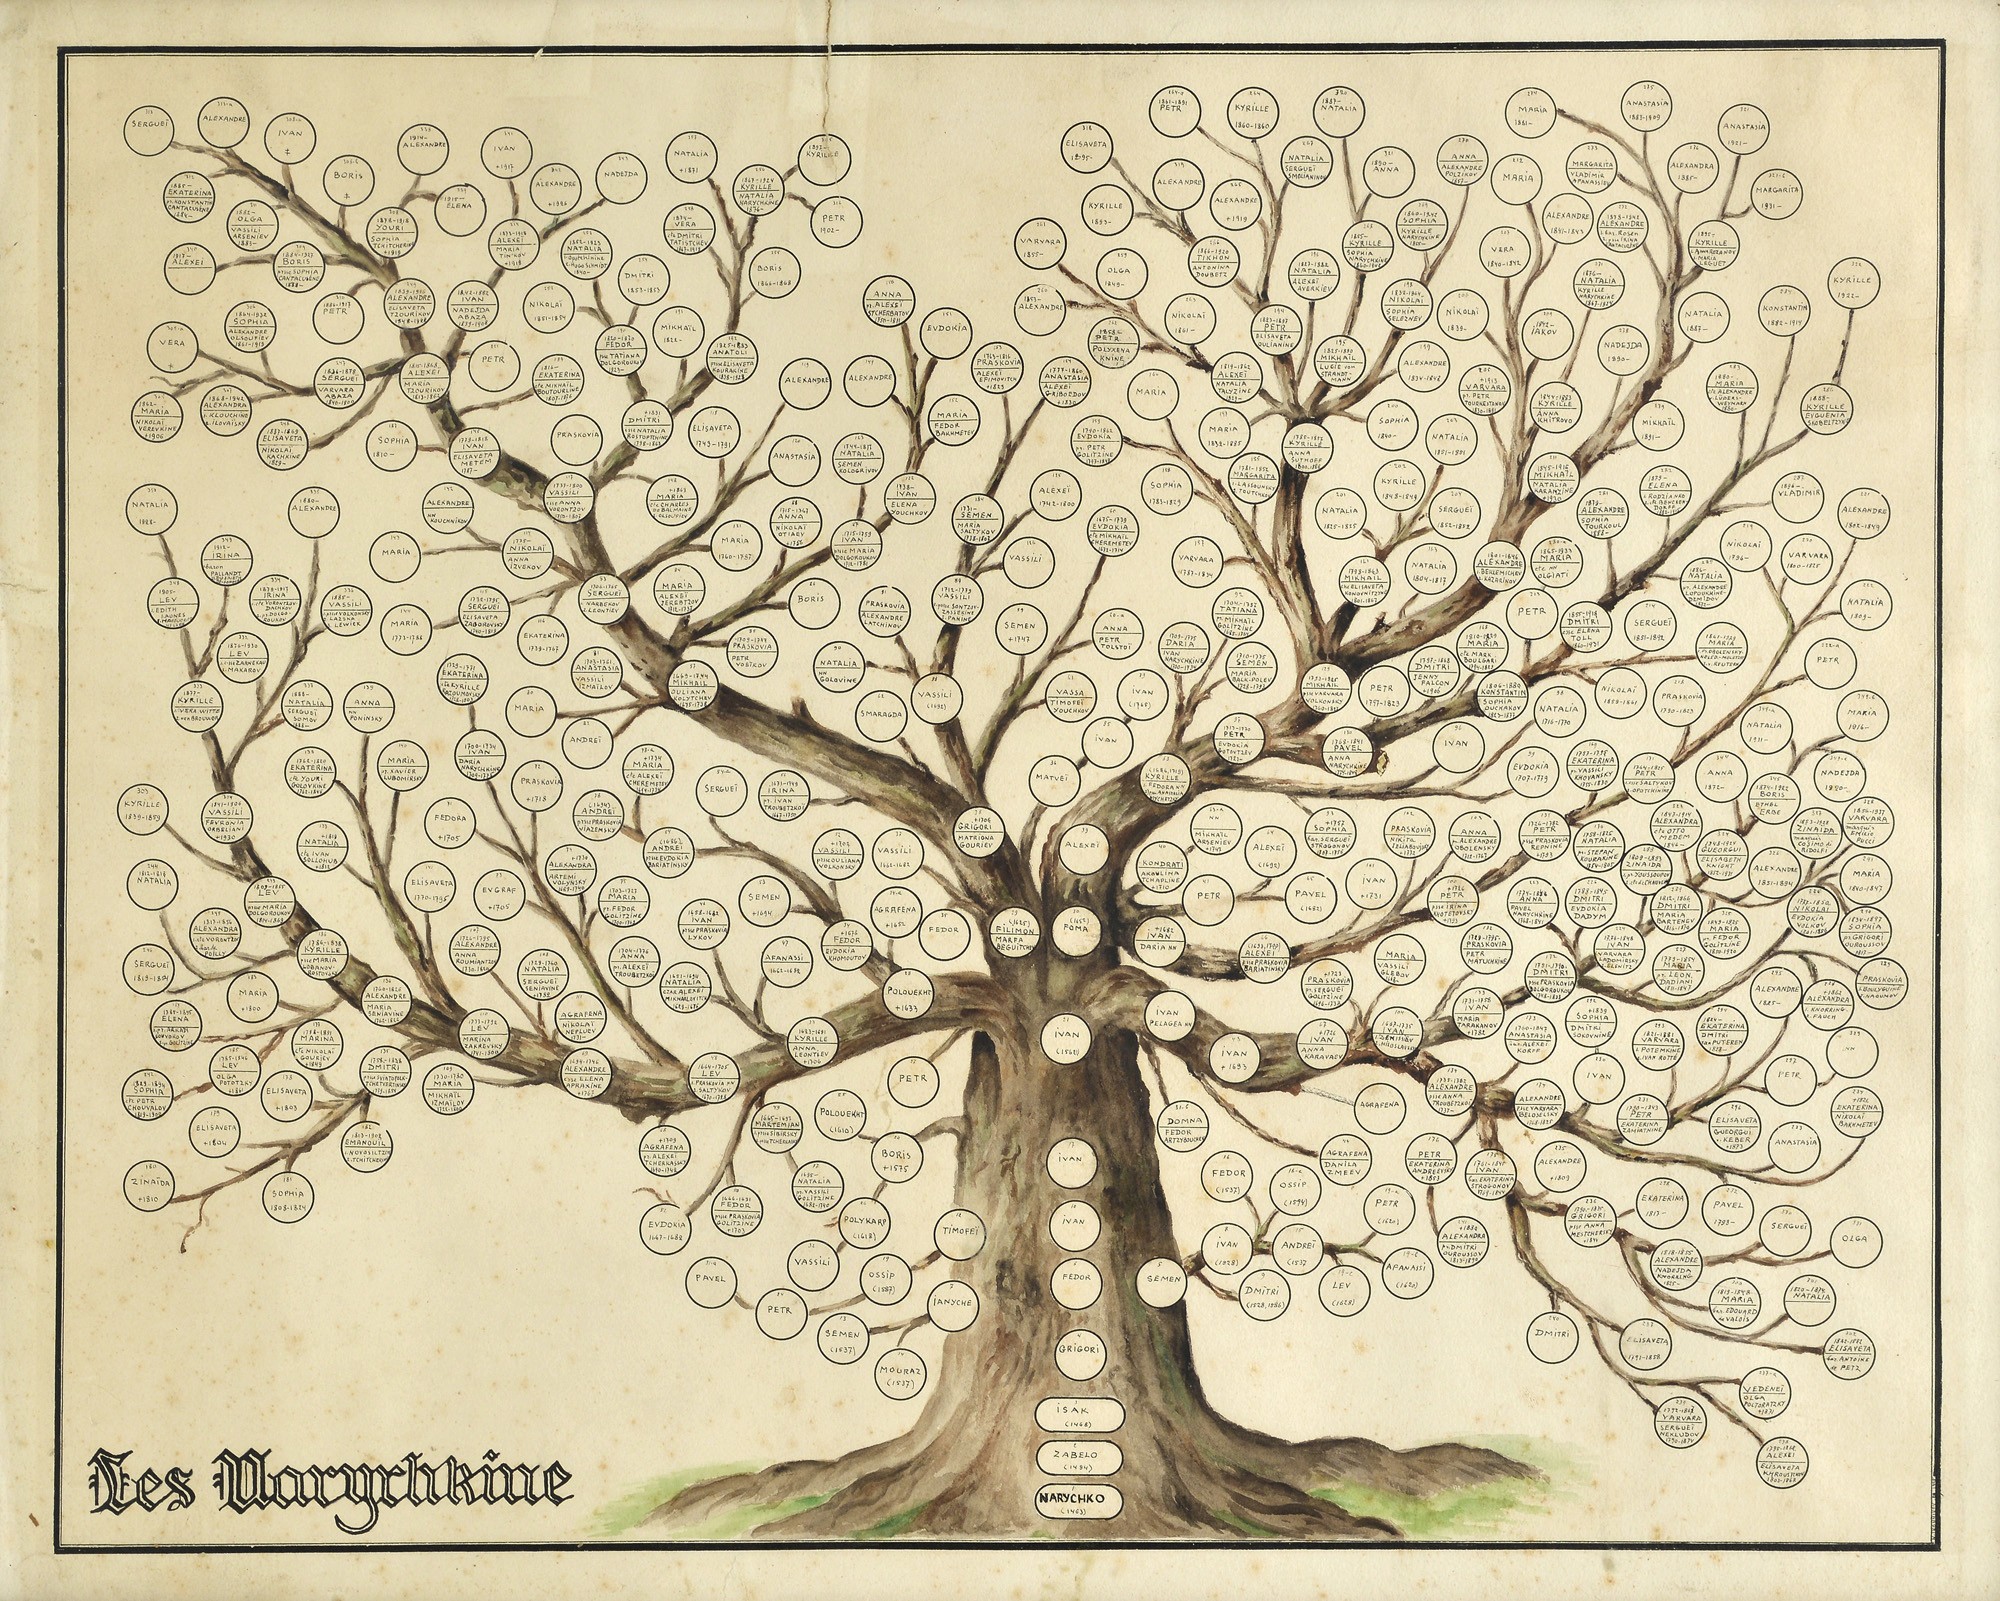 Naryshkin family tree Straipsniai.lt